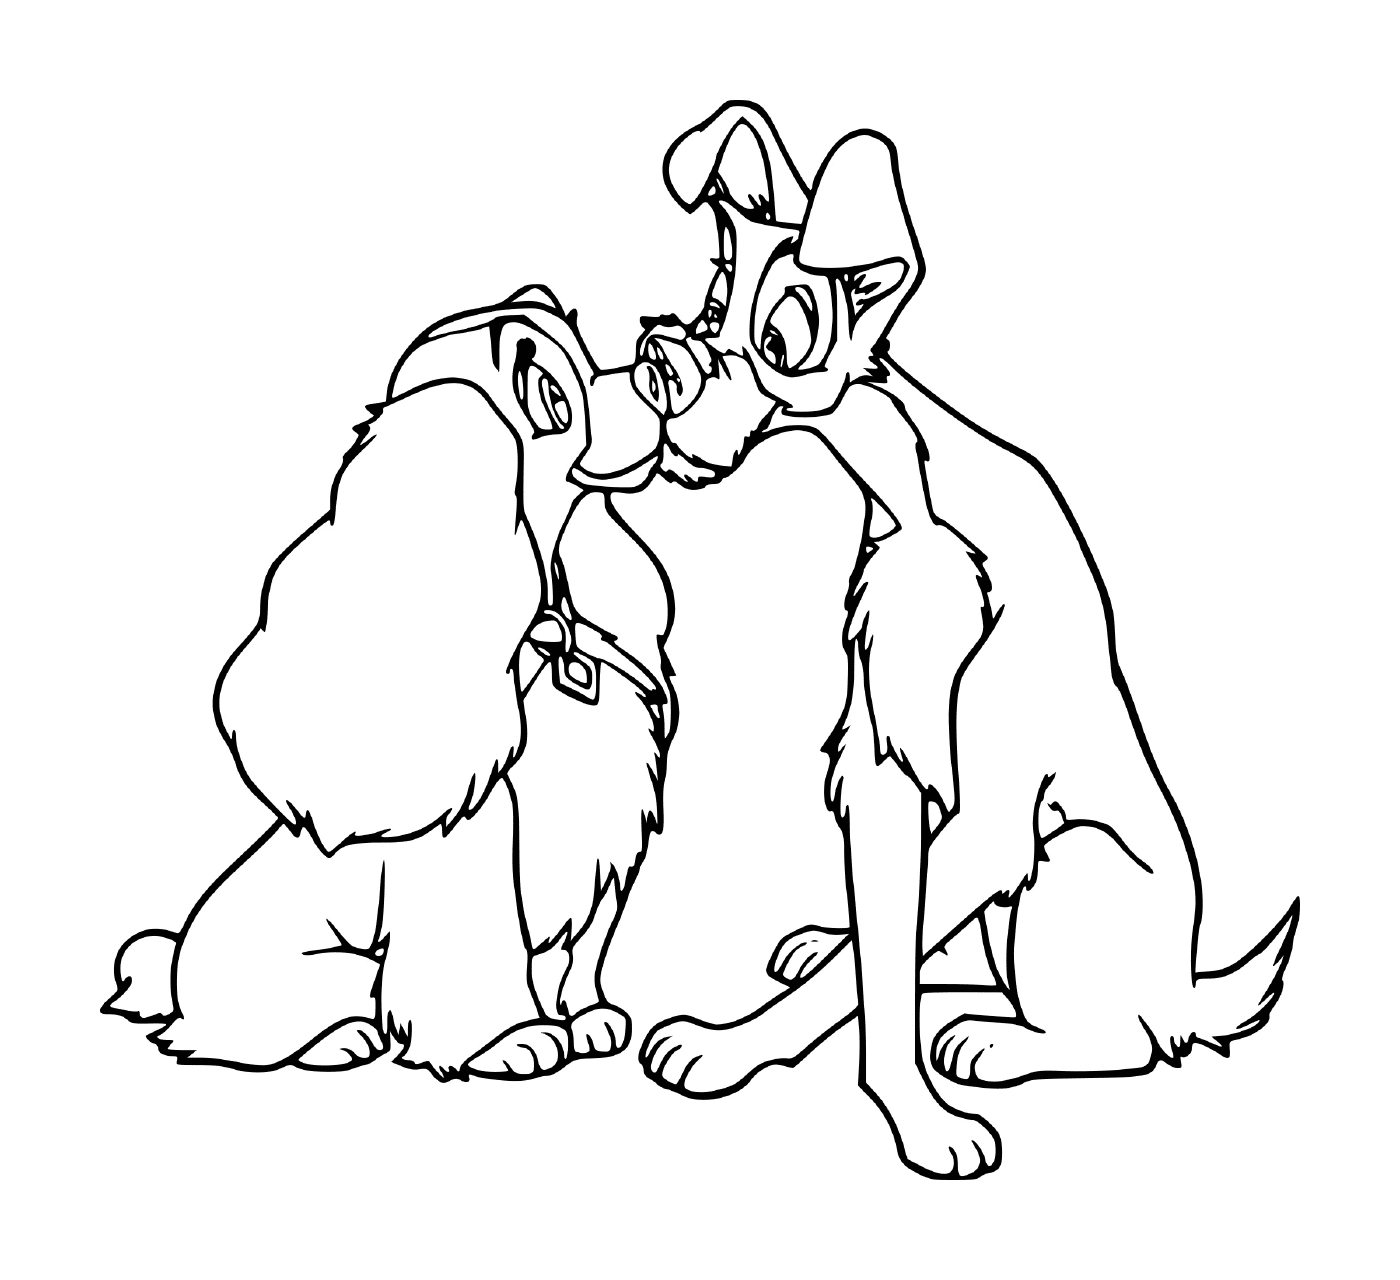  एक - दो कुत्तों के साथ आमने - सामने बैठे एक - साथ बैठे कुत्तों का एक जोड़ा 